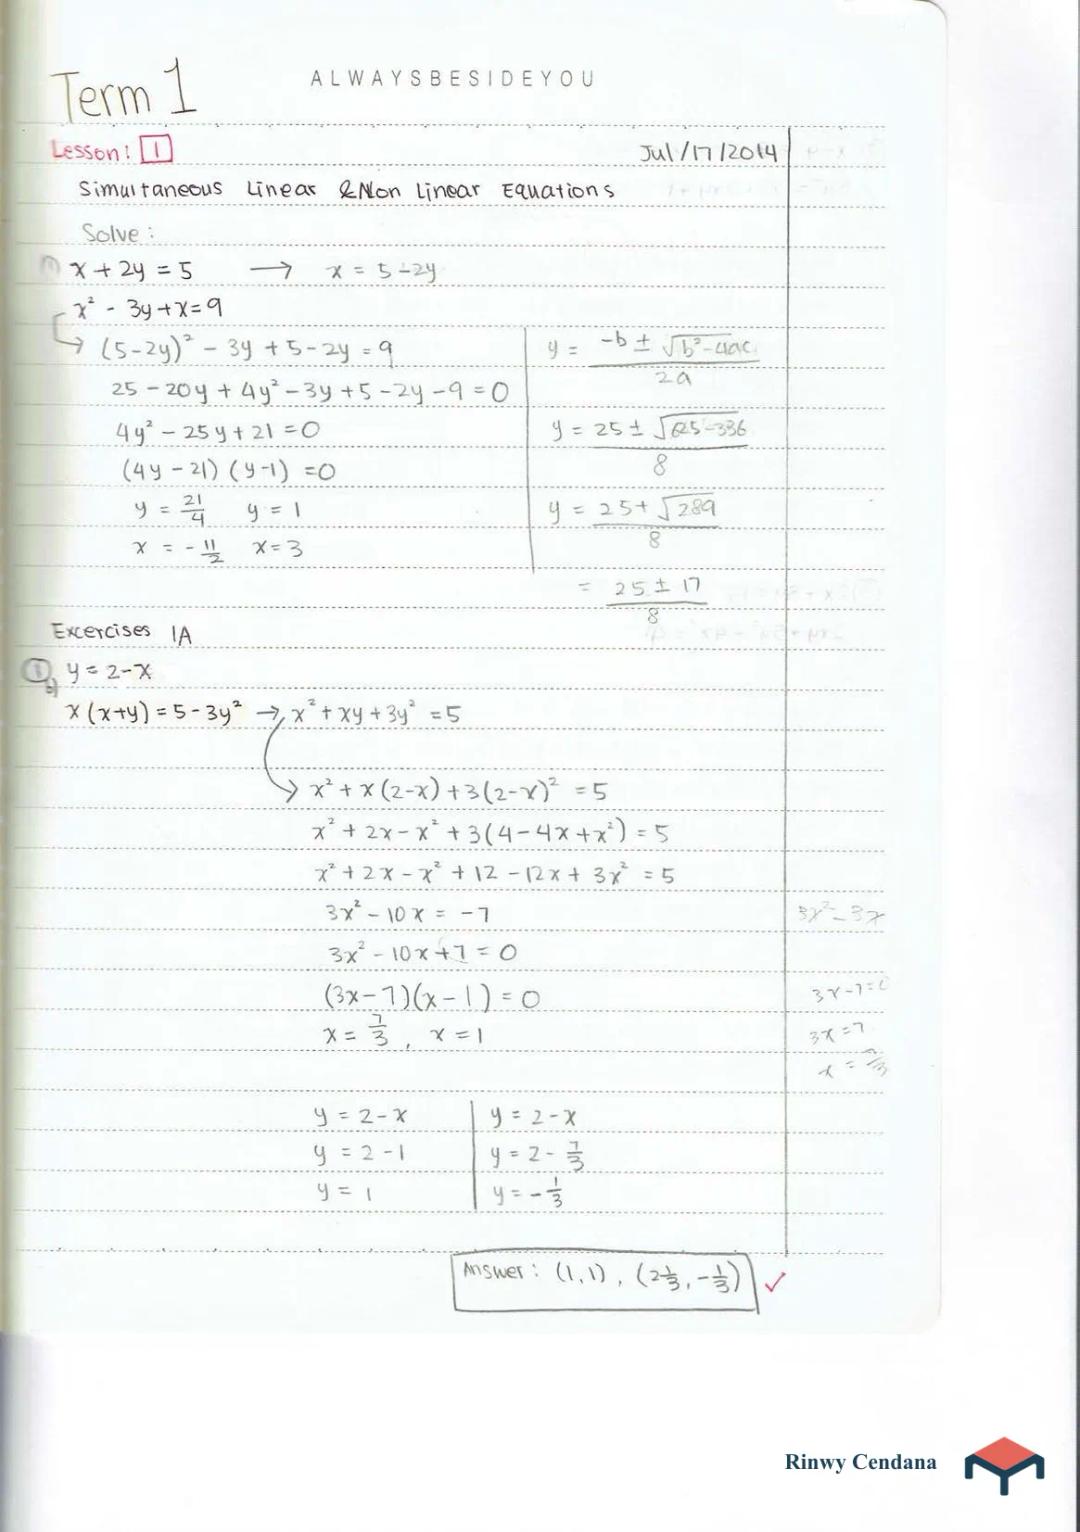 https://service-catatan.mejakita.com/catatan/image/3-simultaneous-linear-and-non-linear-equations-c118b93f-f34b-42ba-a3a0-8e175f3d30c9-1.webp